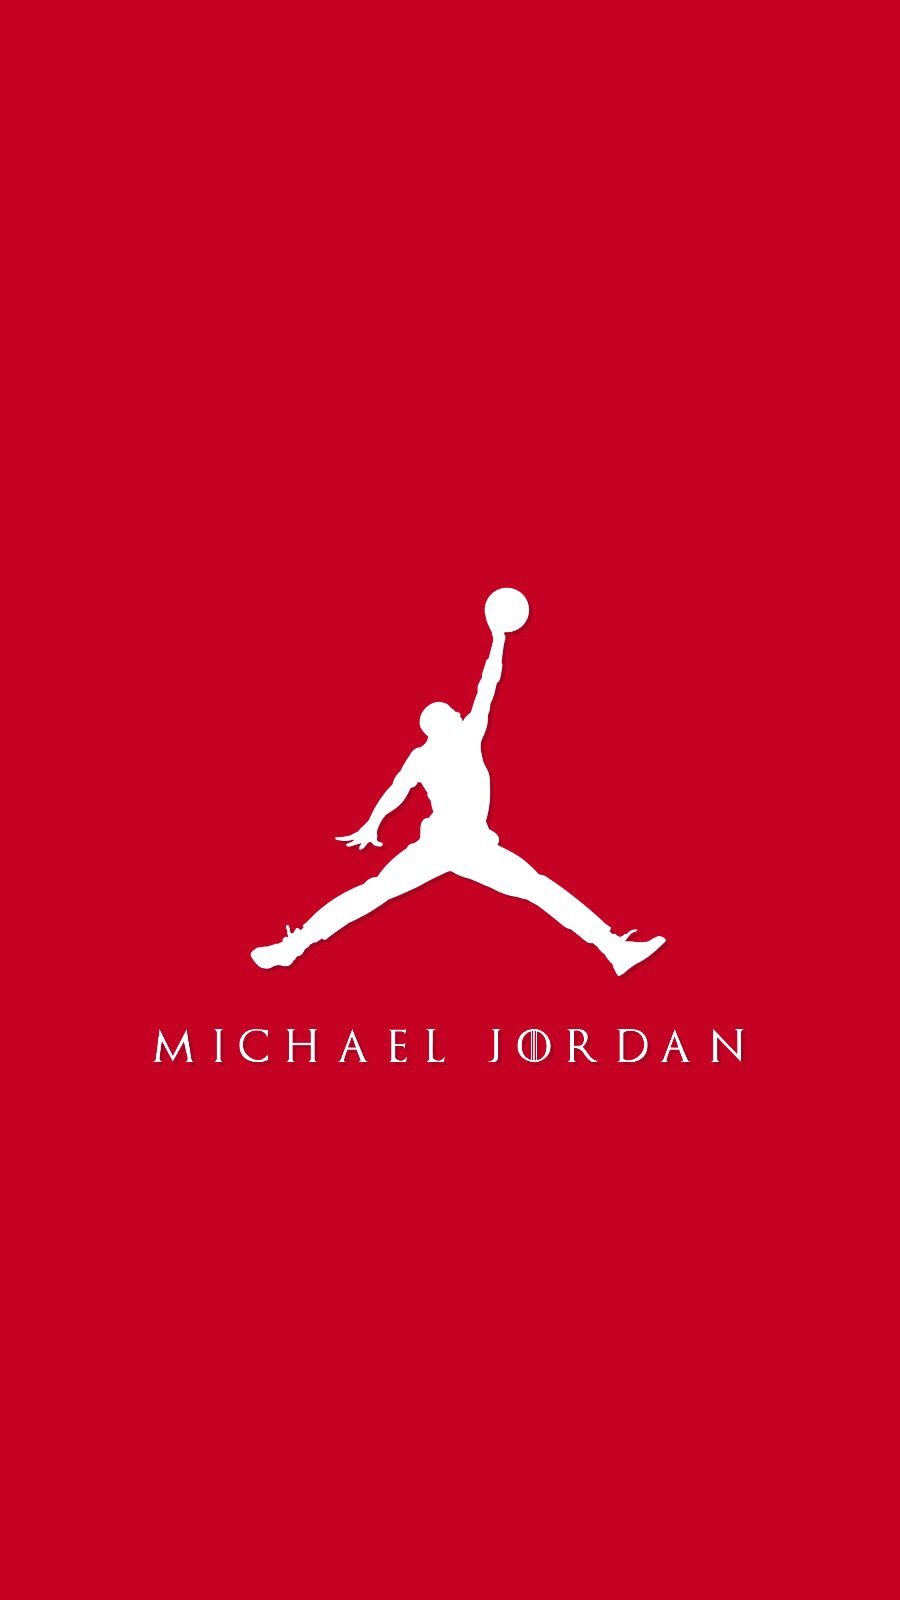 Air Jordan Wallpaper For Android Jordan Logo Wallpaper